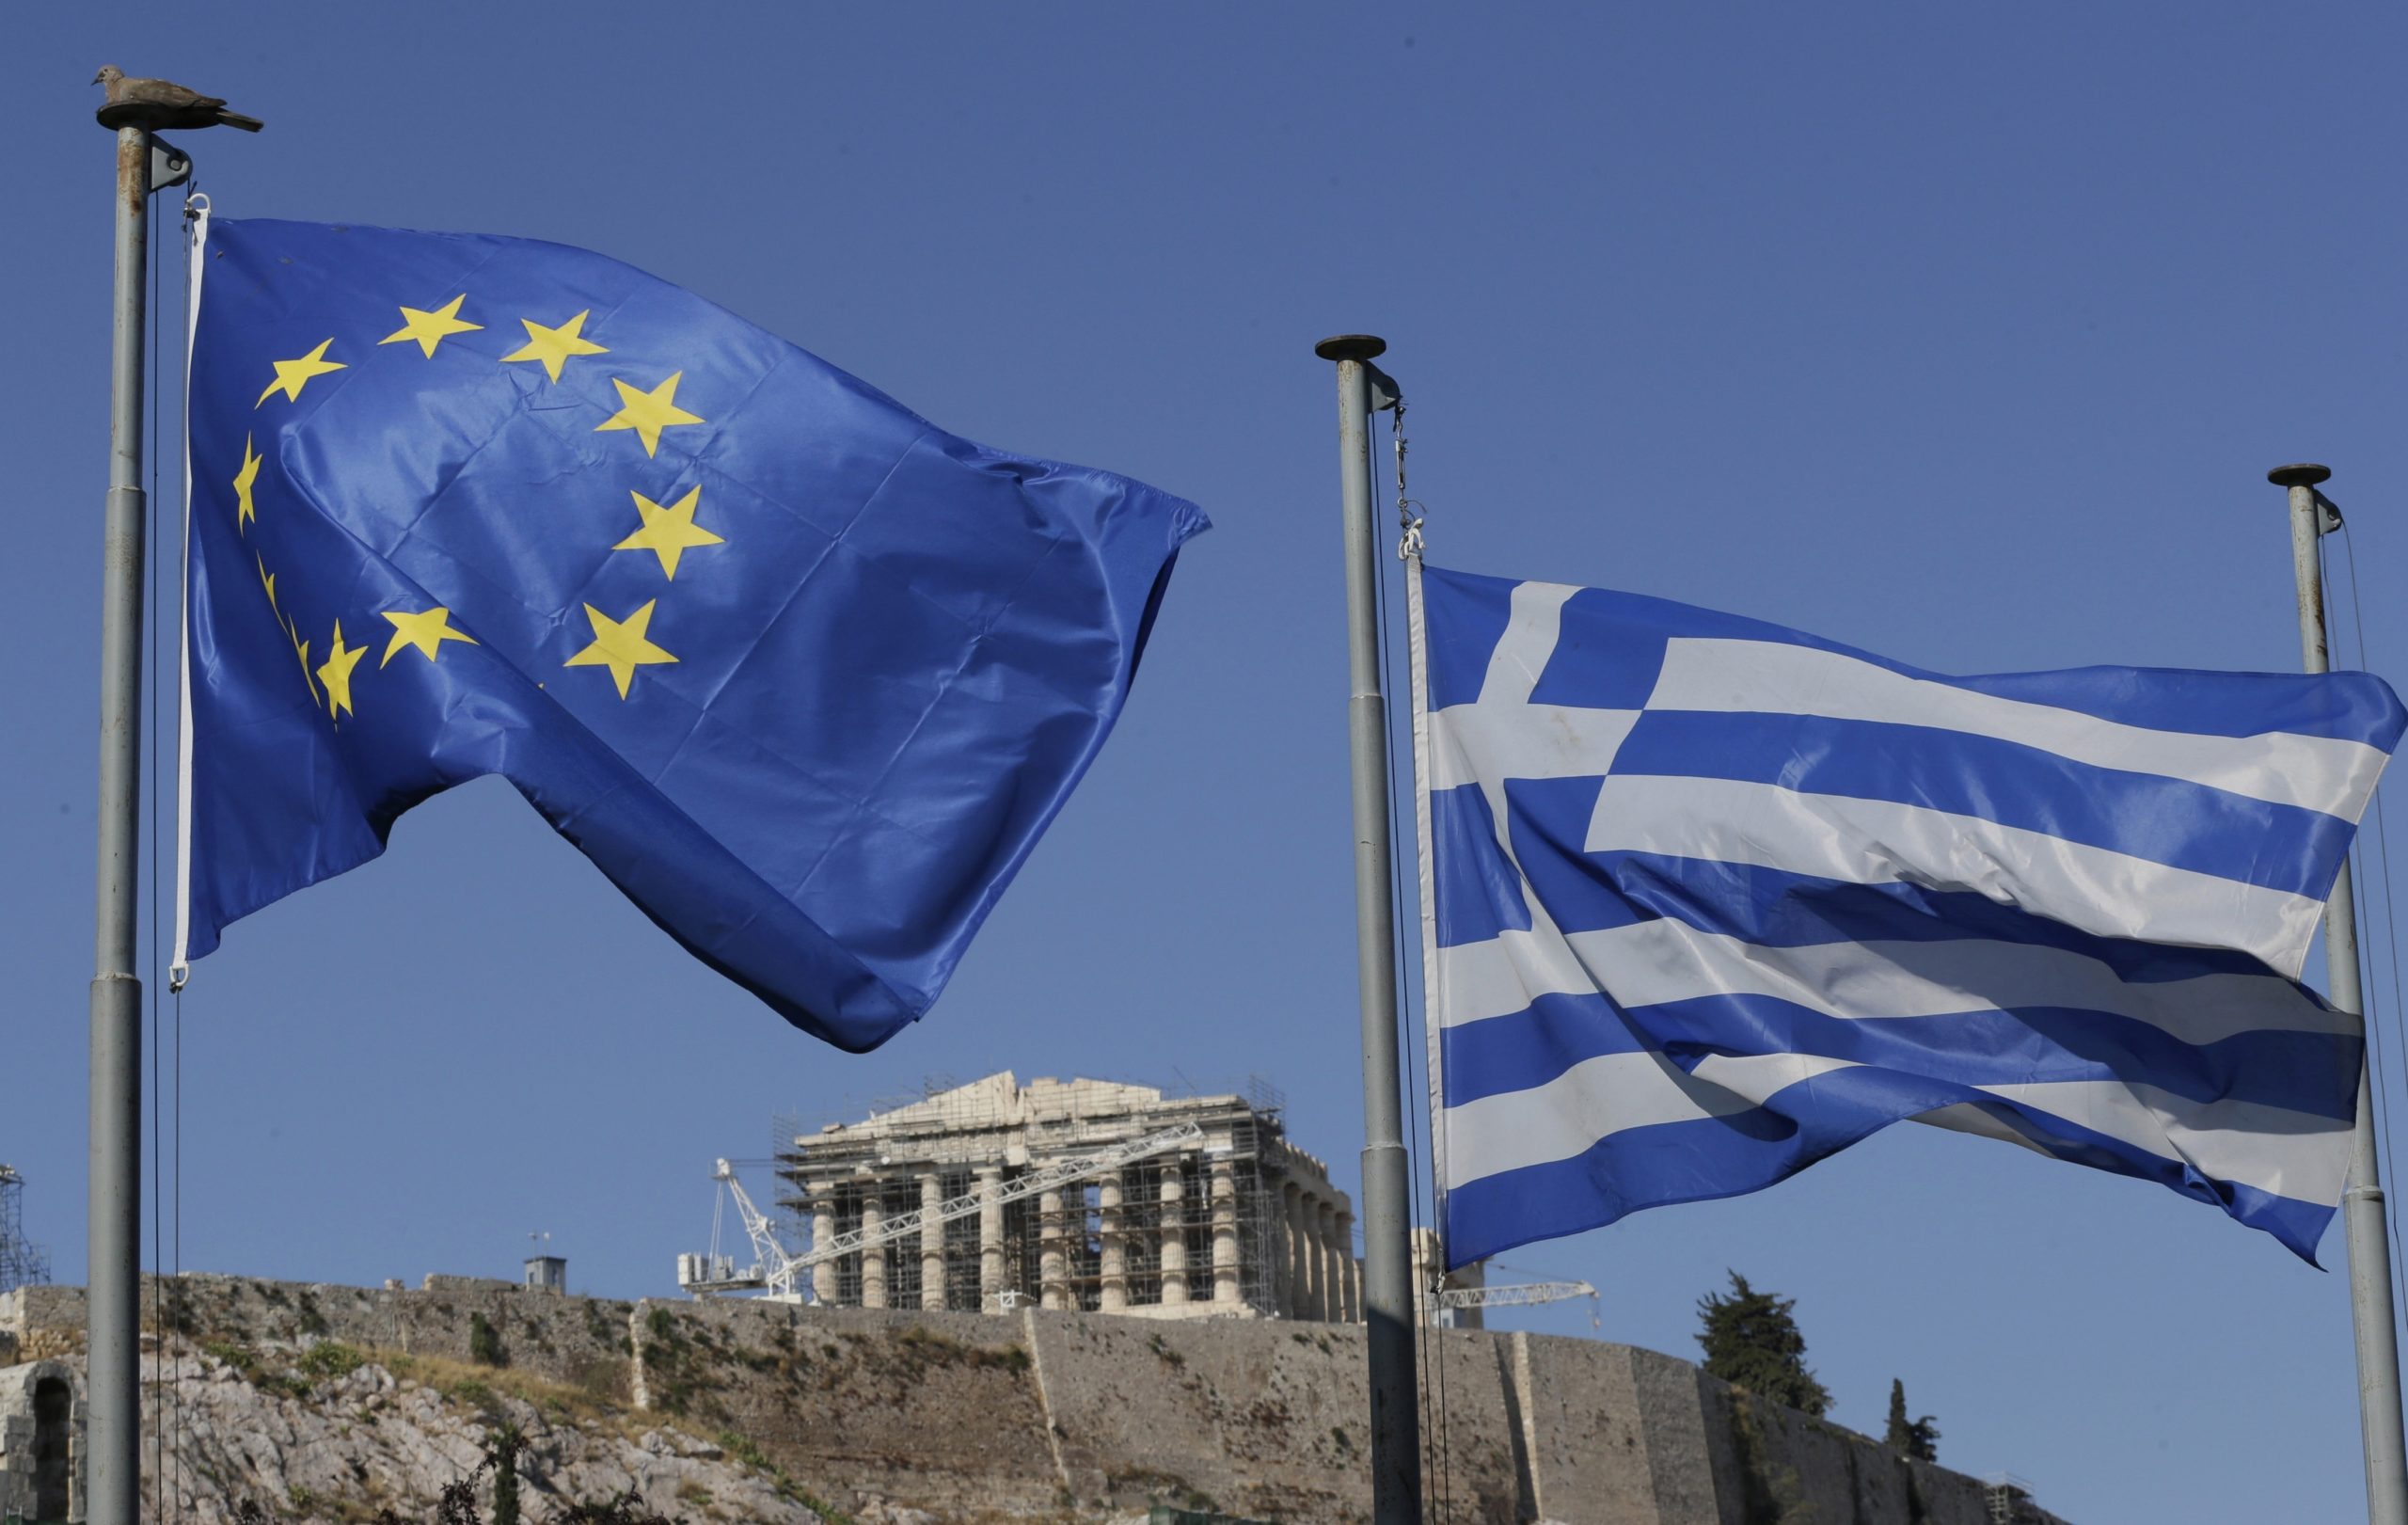 Ταμείο Ανάκαμψης: Εγκρίθηκε η εκταμίευση 3,56 δισ. ευρώ – Φον ντερ Λάιεν: Εξαιρετικά νέα για την Ελλάδα